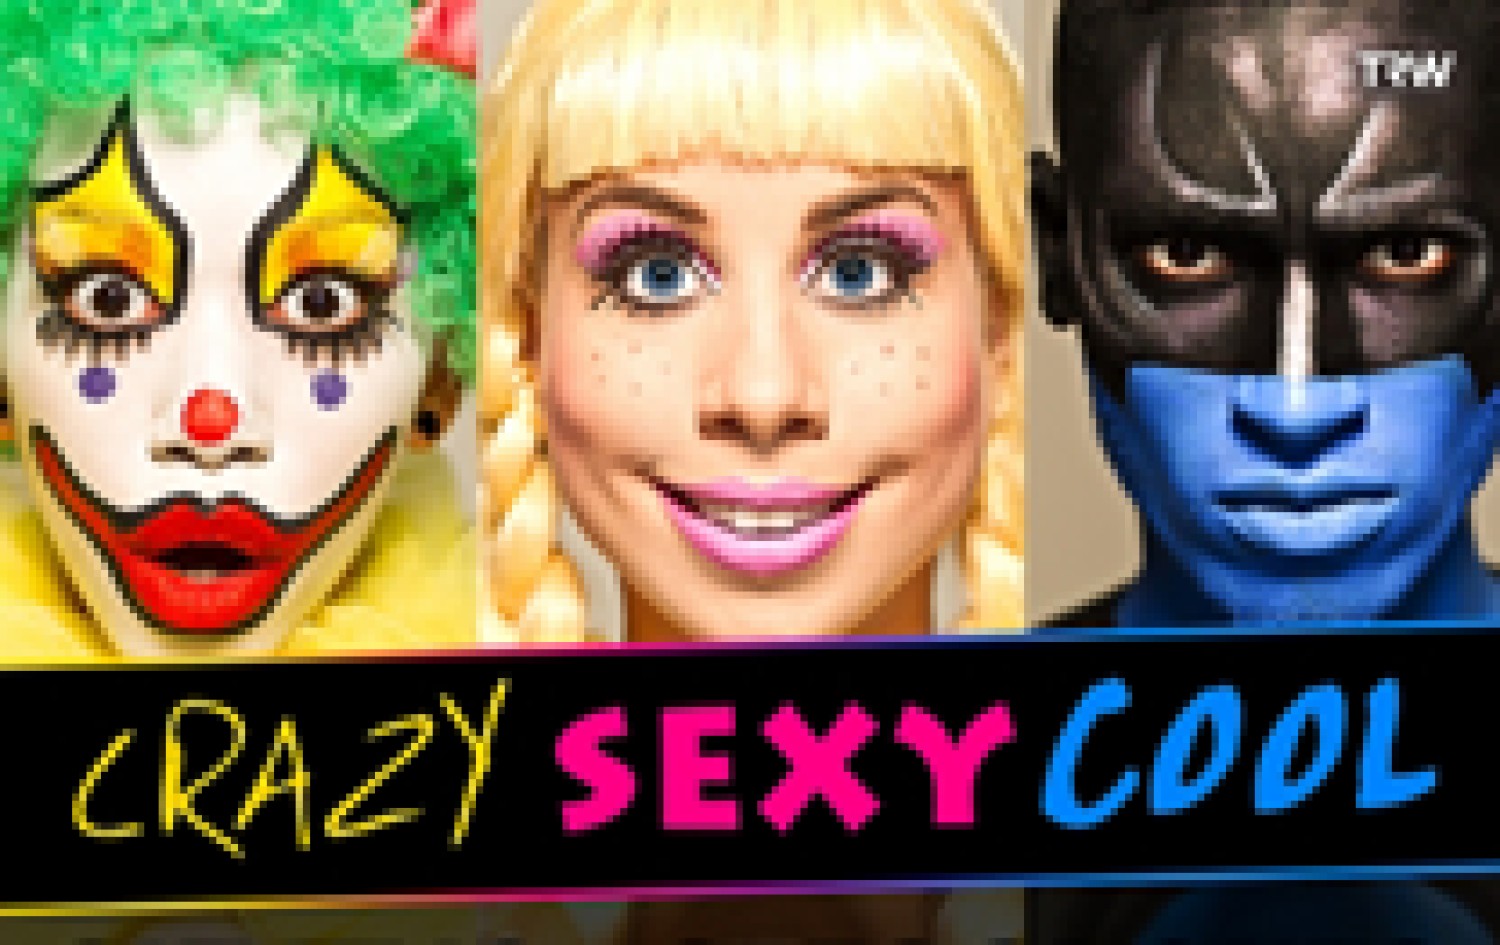 Party nieuws: Crazy Sexy Cool komt met knotsgekke Carnival editie!